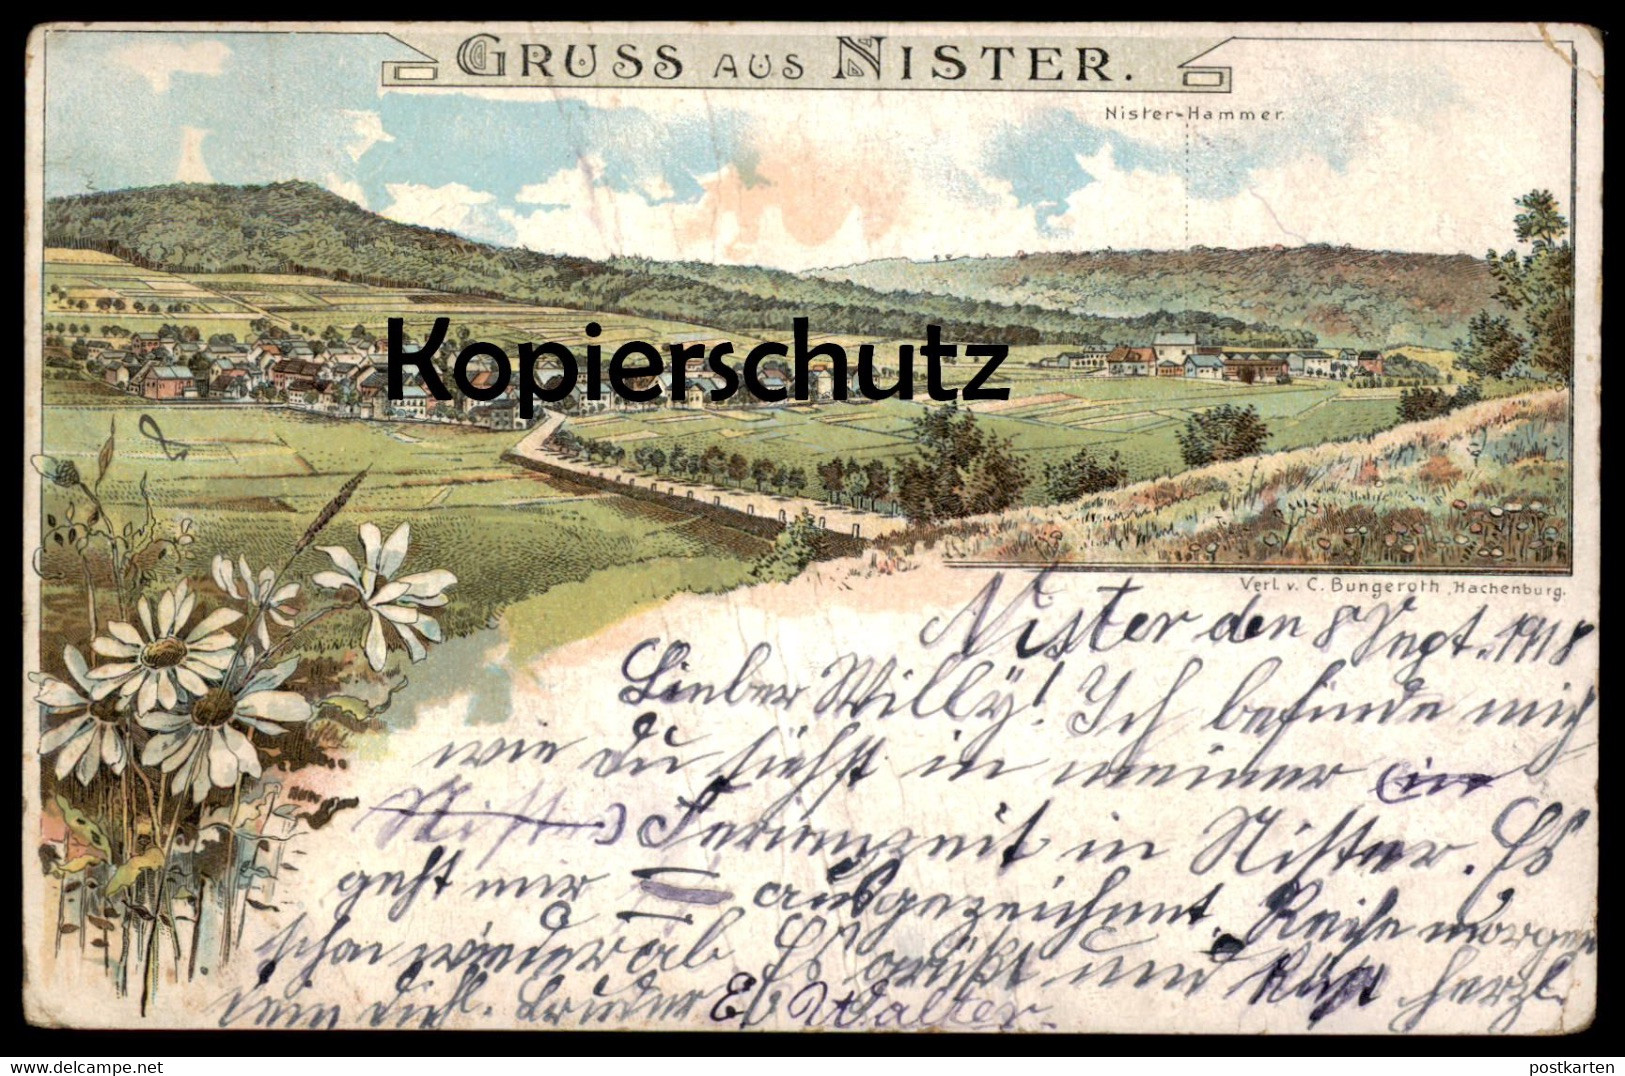 ALTE LITHO POSTKARTE GRUSS AUS NISTER HACHENBURG NISTER-HAMMER Stempel Feldpost Postmark Crefeld Cpa Postcard AK - Hachenburg